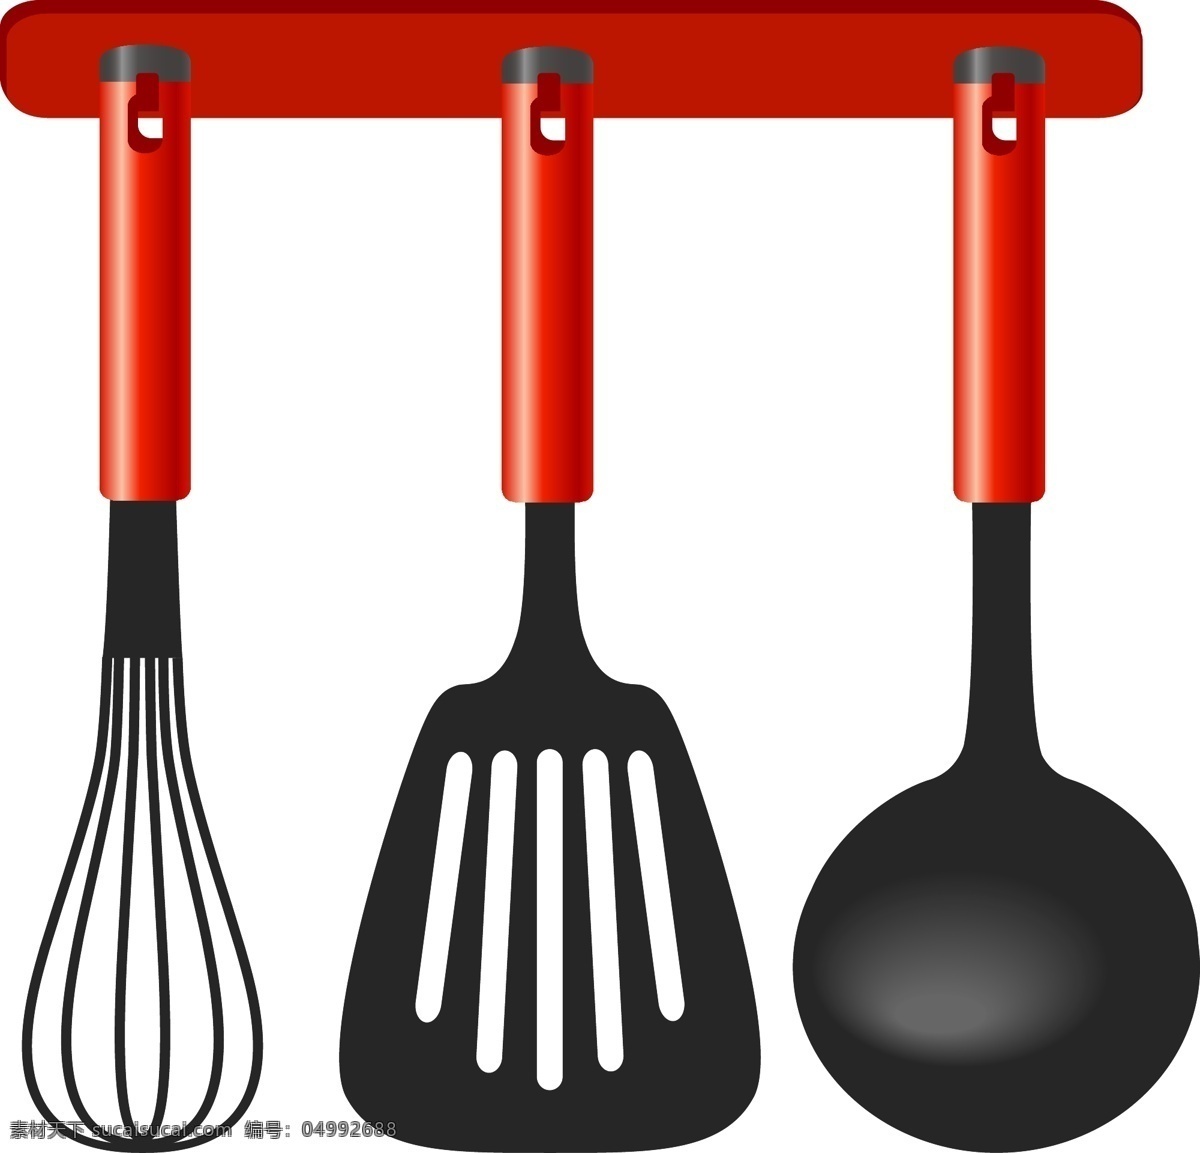 矢量 勺子 铲子 元素 红色勺子 厨房用具 ai元素 免扣元素